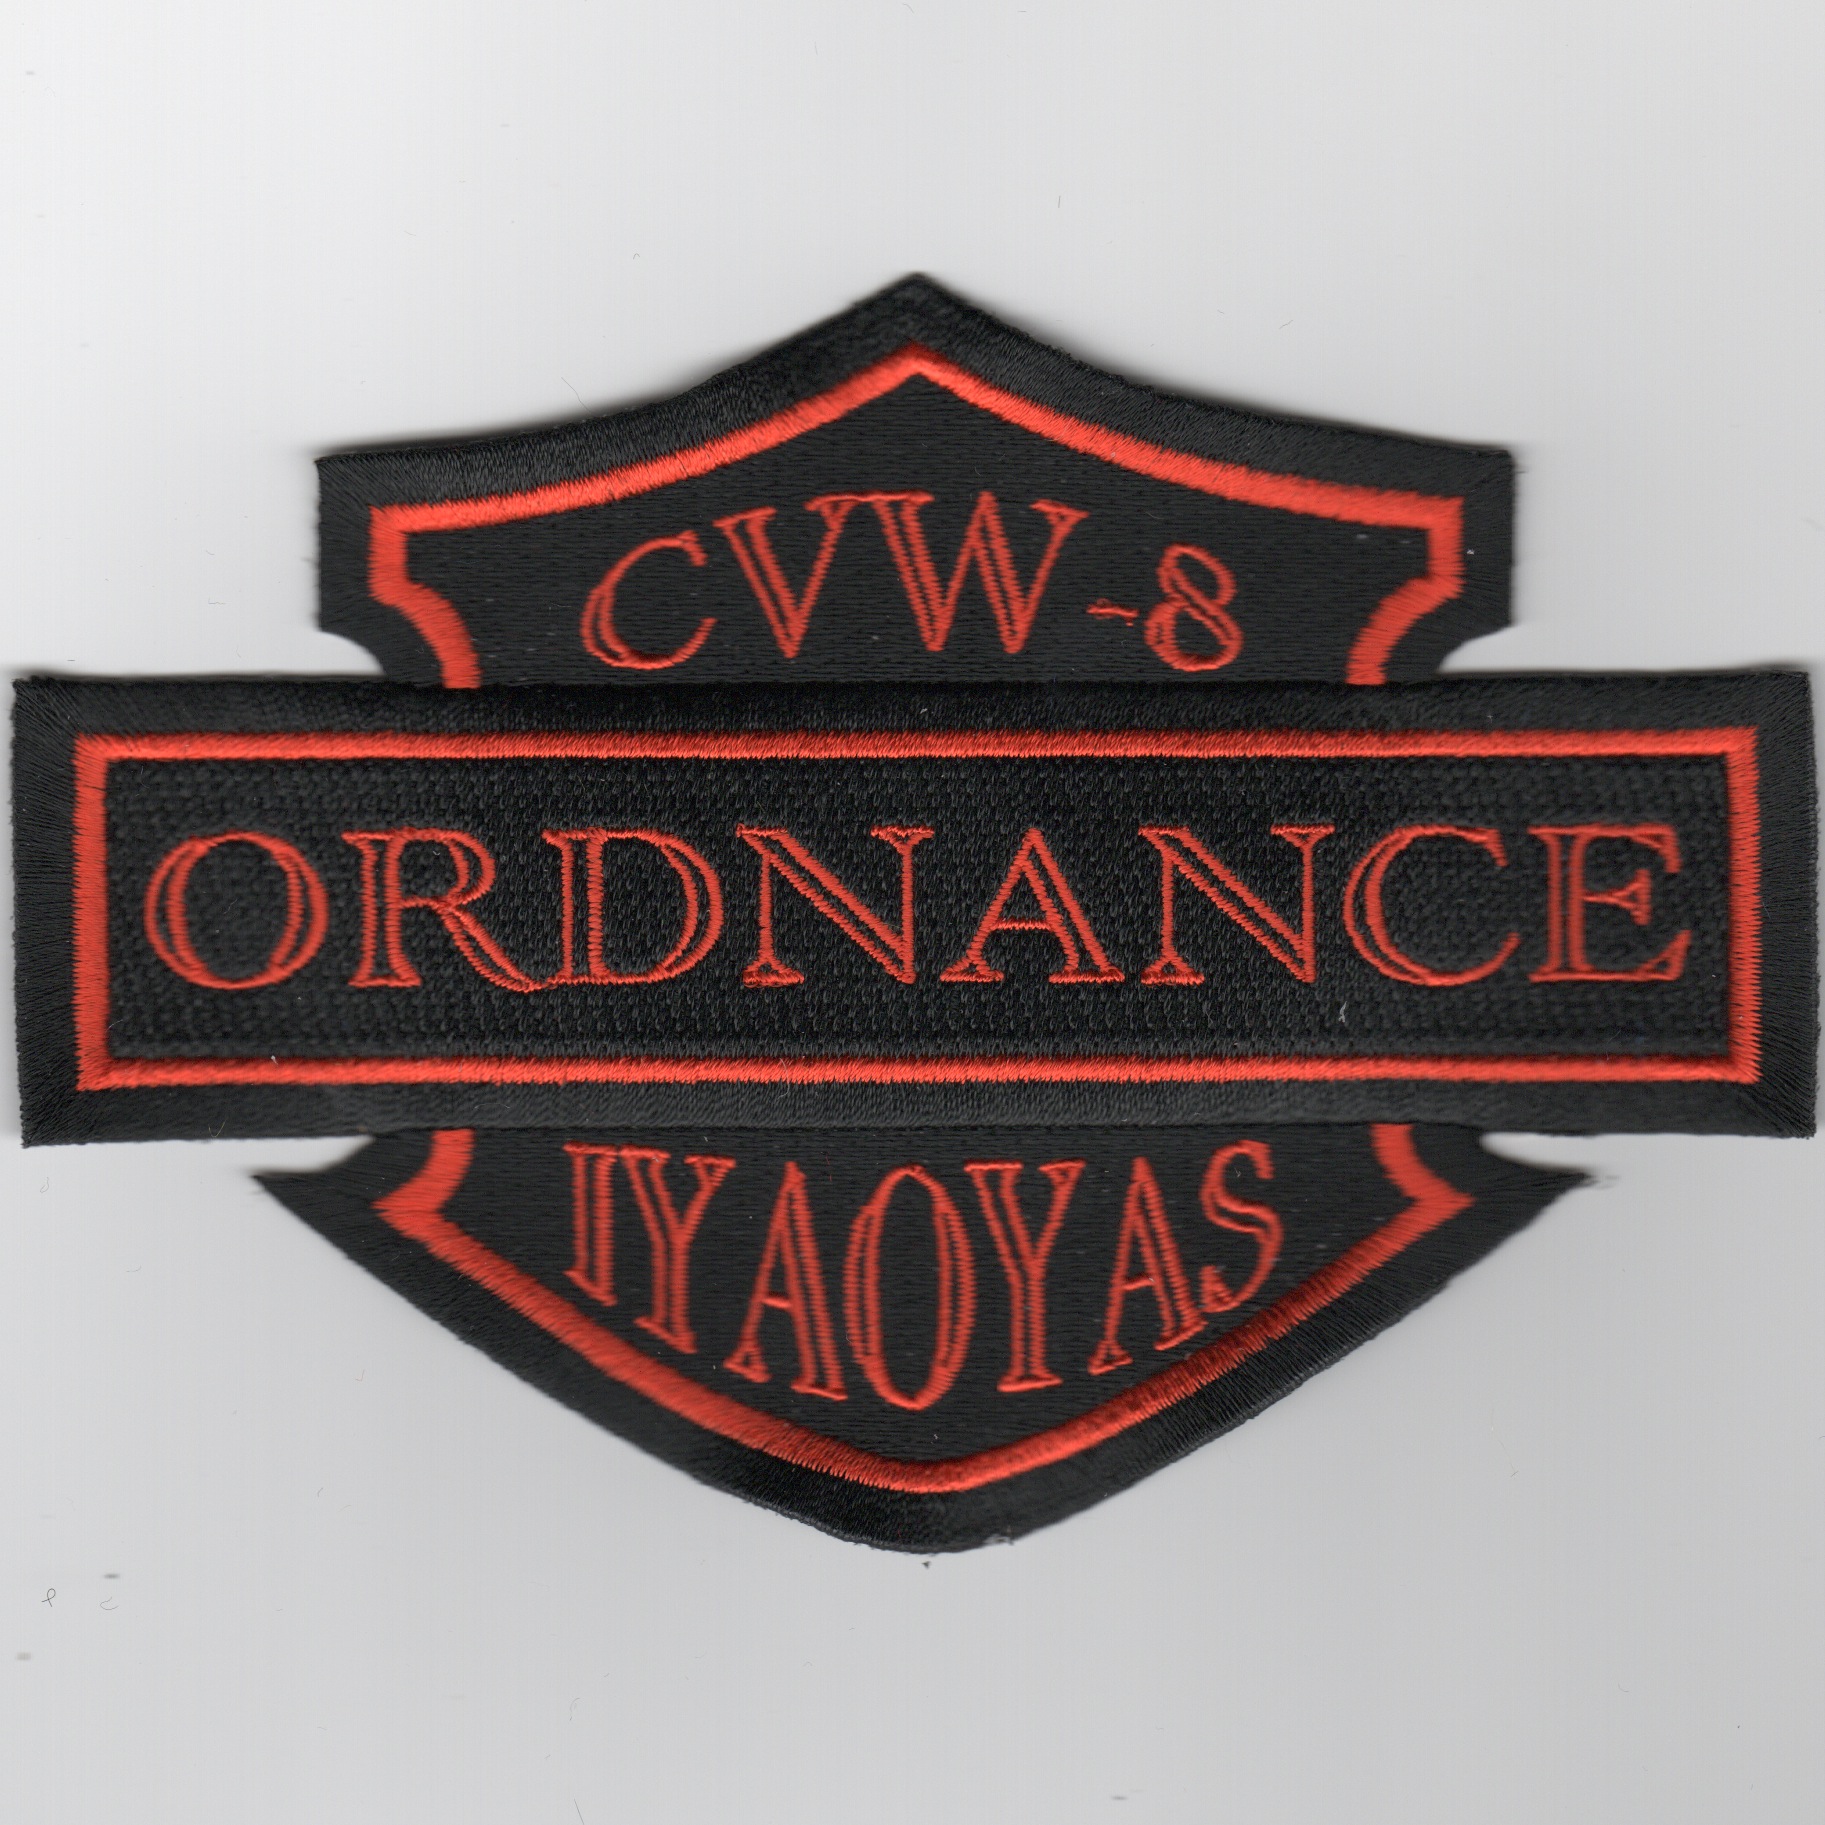 CVW-8 'ORDNANCE/IYAOYAS' Patch (Harley Style)